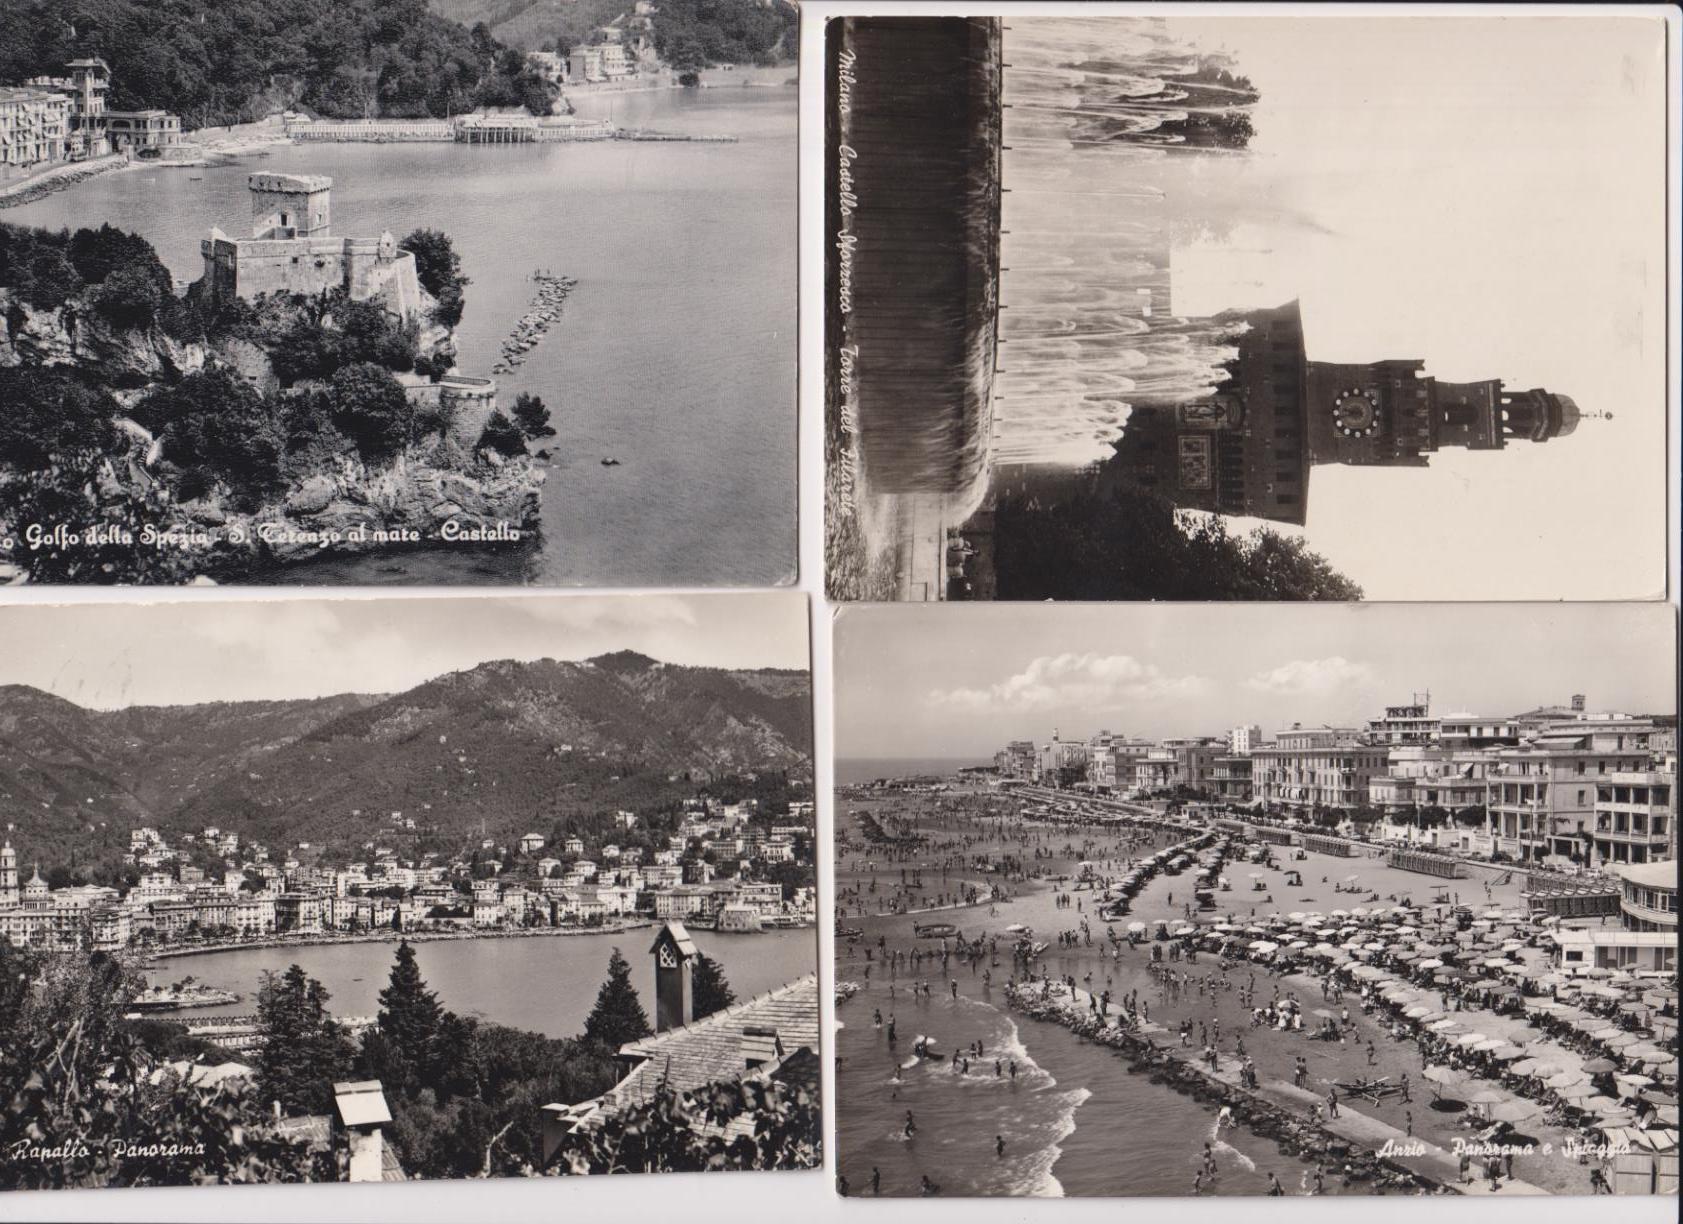 Italia. Lote de 4 Postales: Rapallo, La Spezia, Milán y Anzio. Franqueadas y fechadas en 1958, 1959, 1962 y 1967